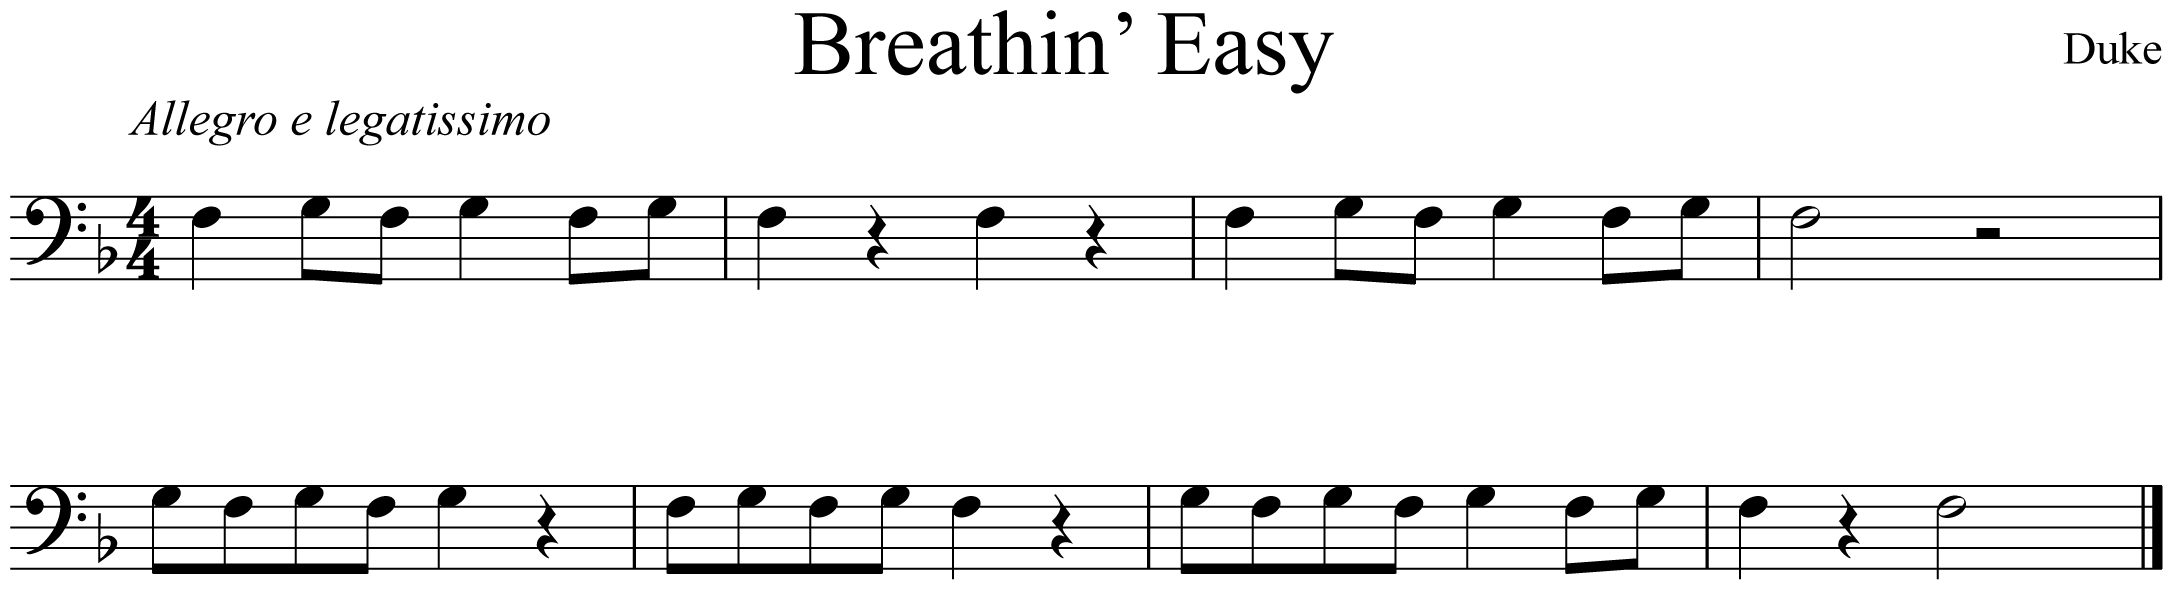 Breathin' Easy Trombone Music Notation